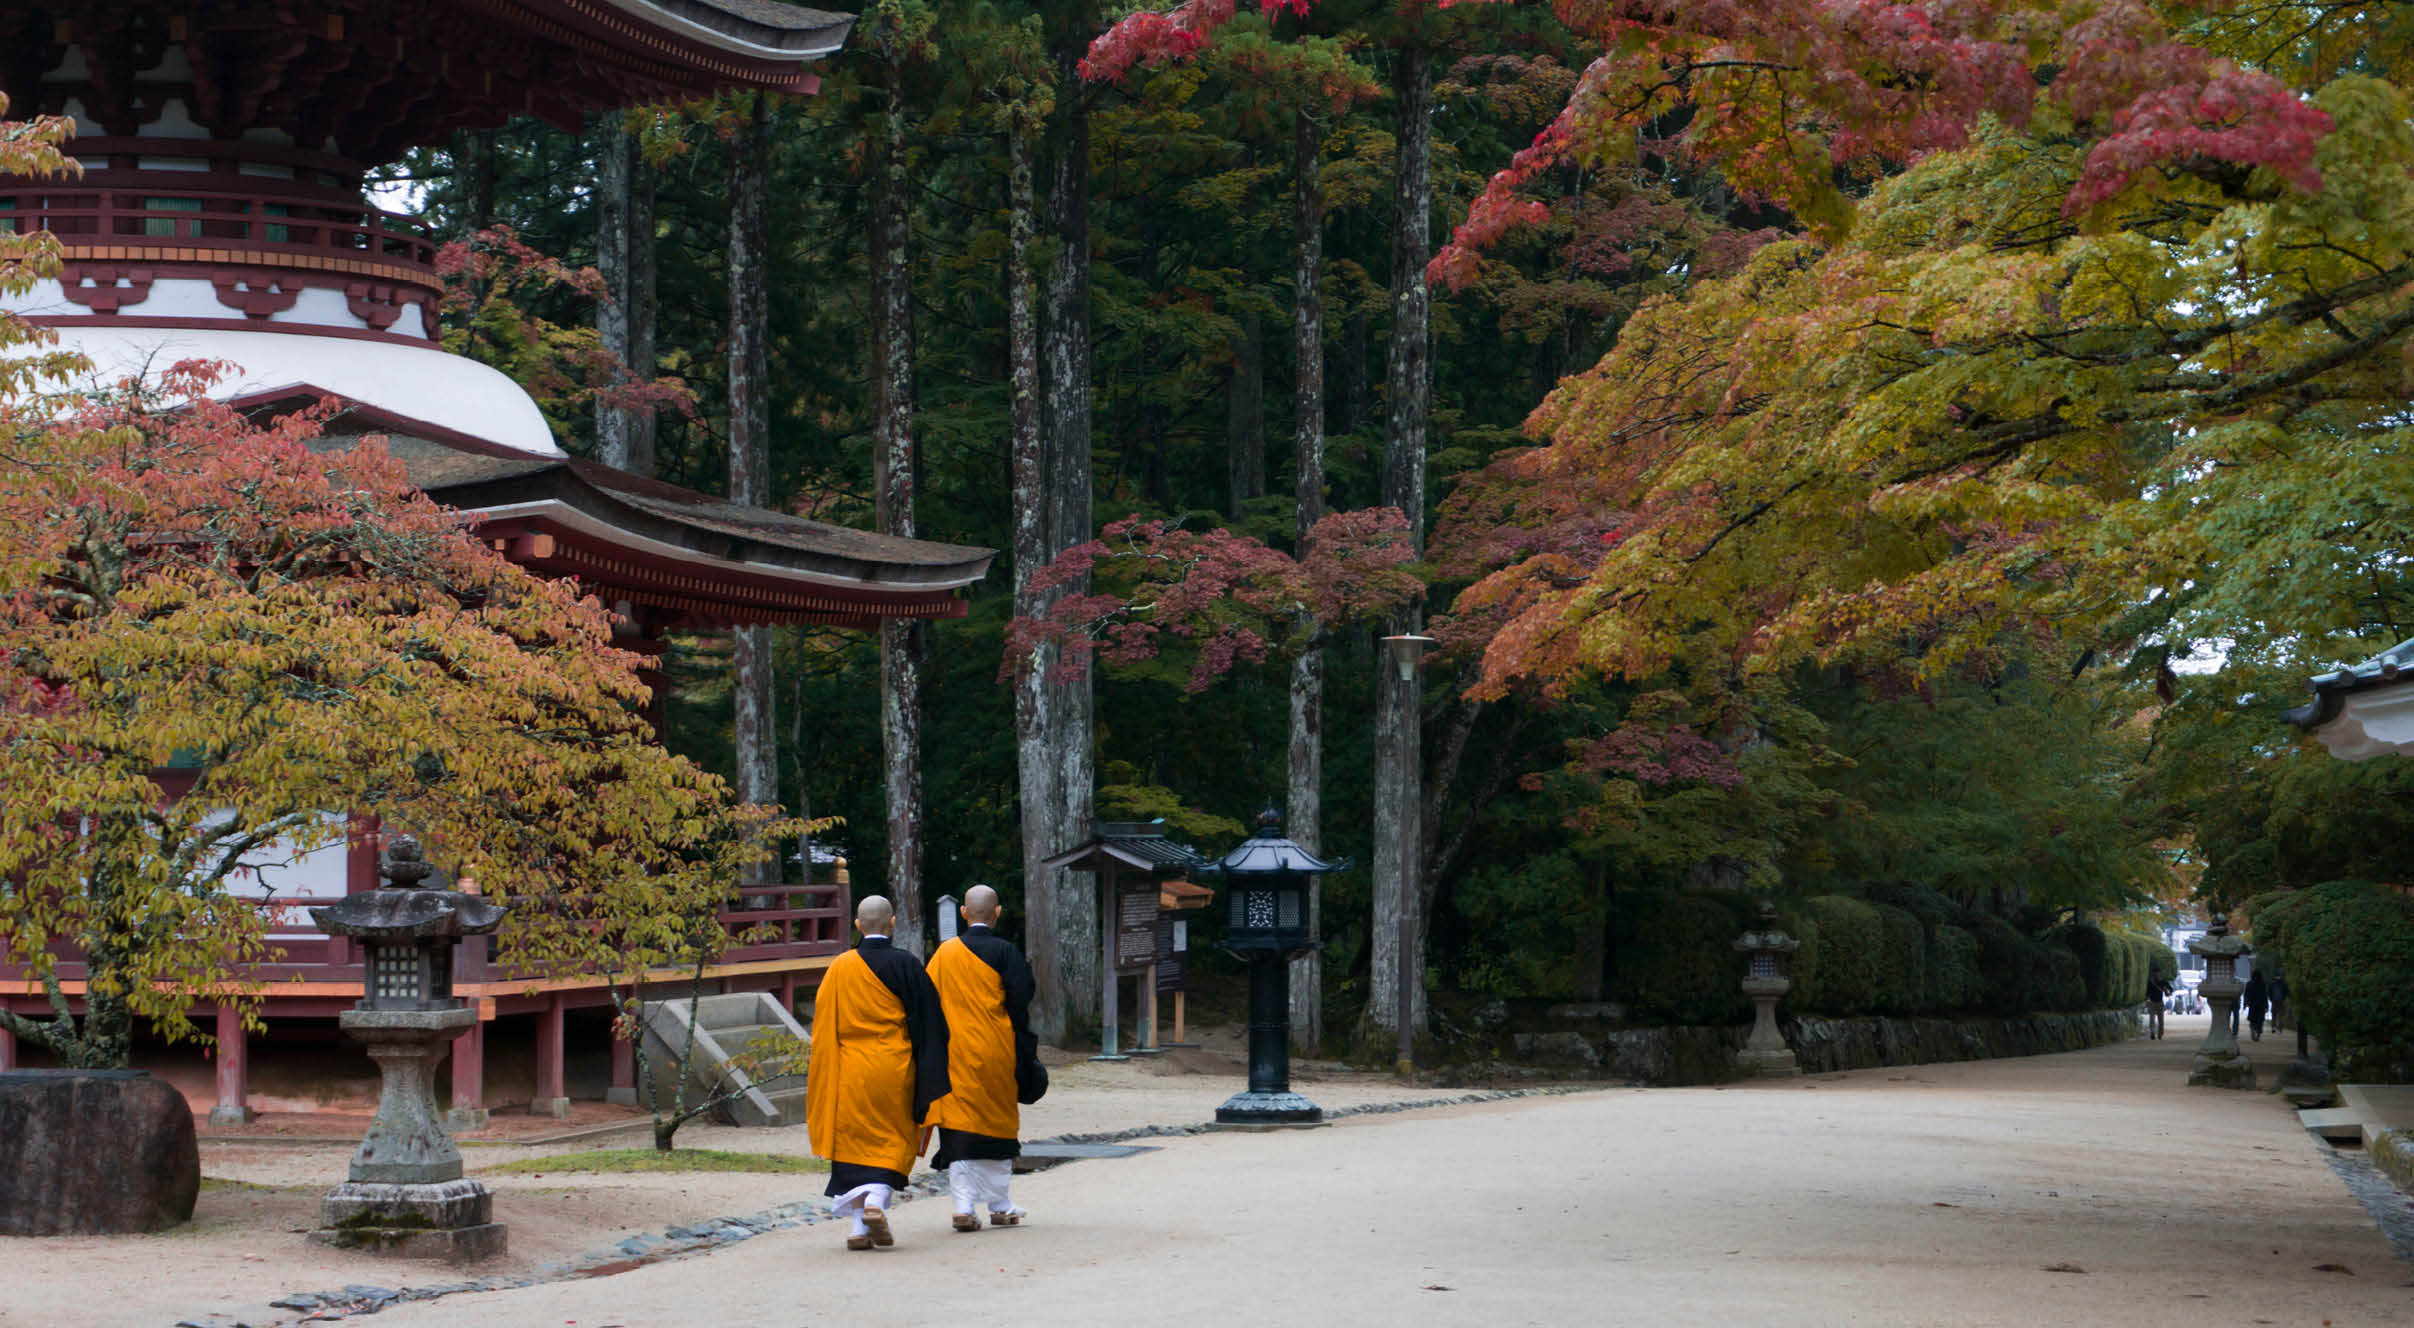 Buddhist monks walking past temple in Koyasan, Mt Koya, Japan during autumn. 